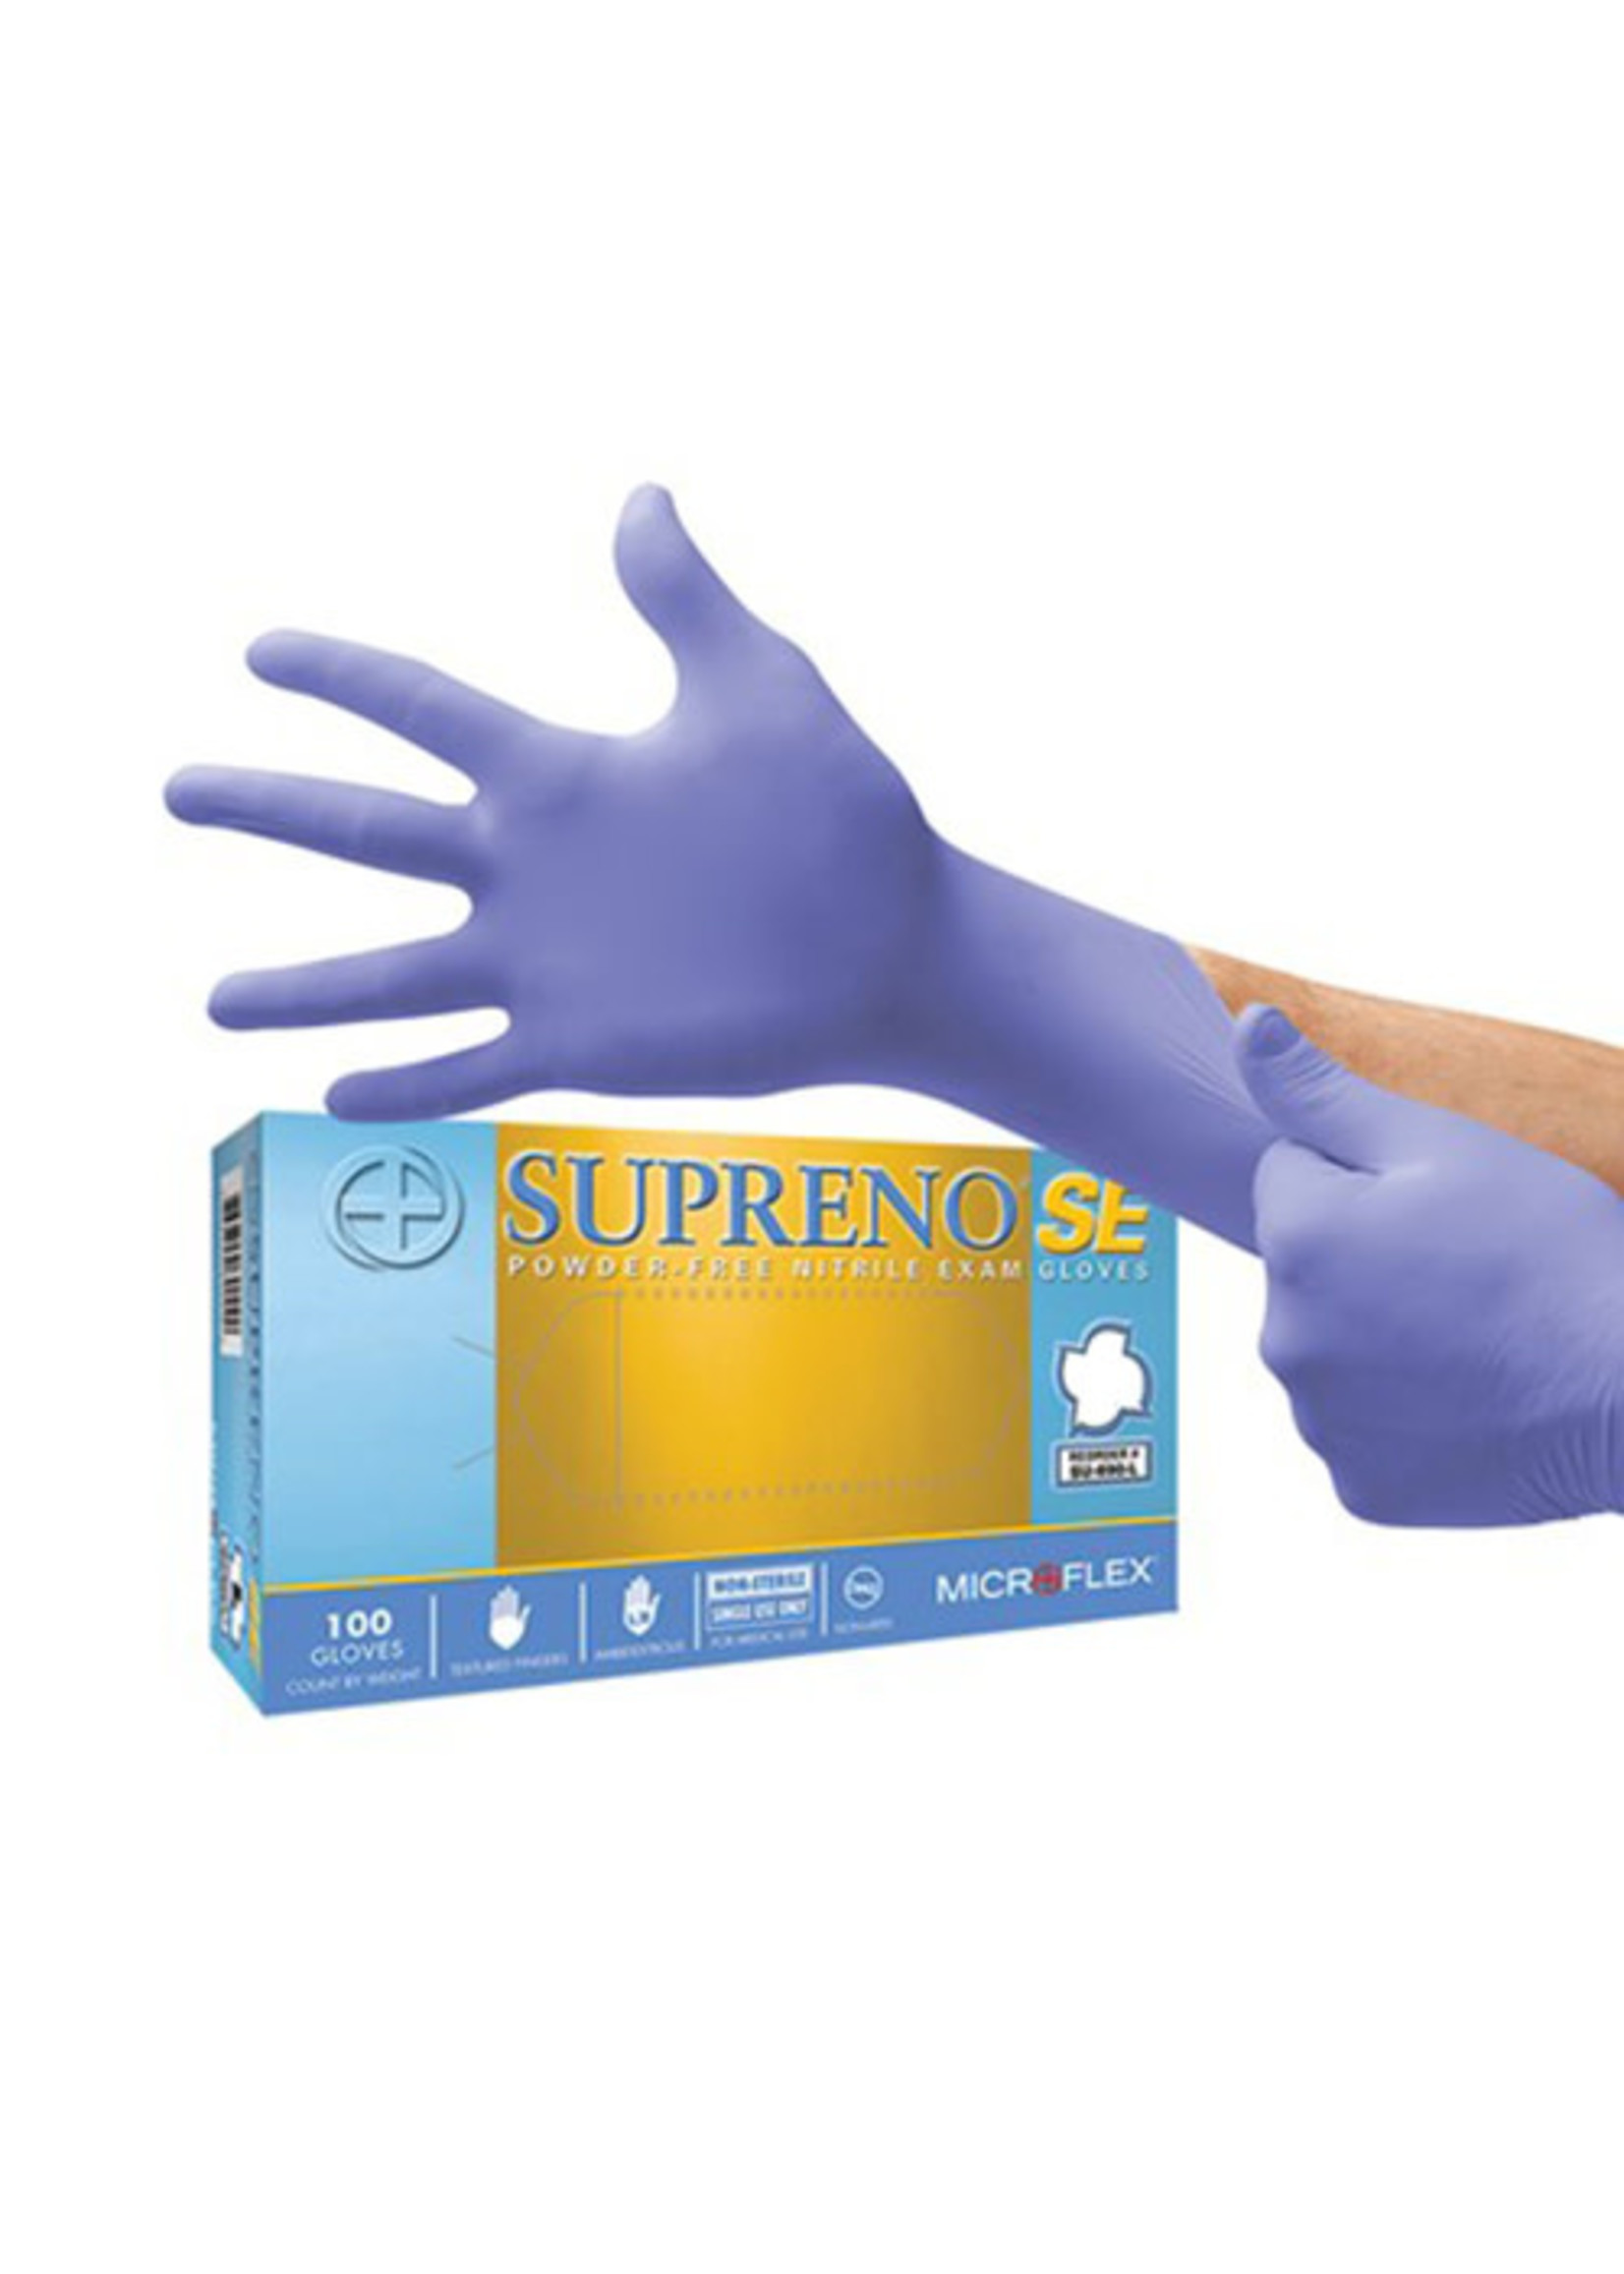 Exam Gloves S - Supreno SE Purple